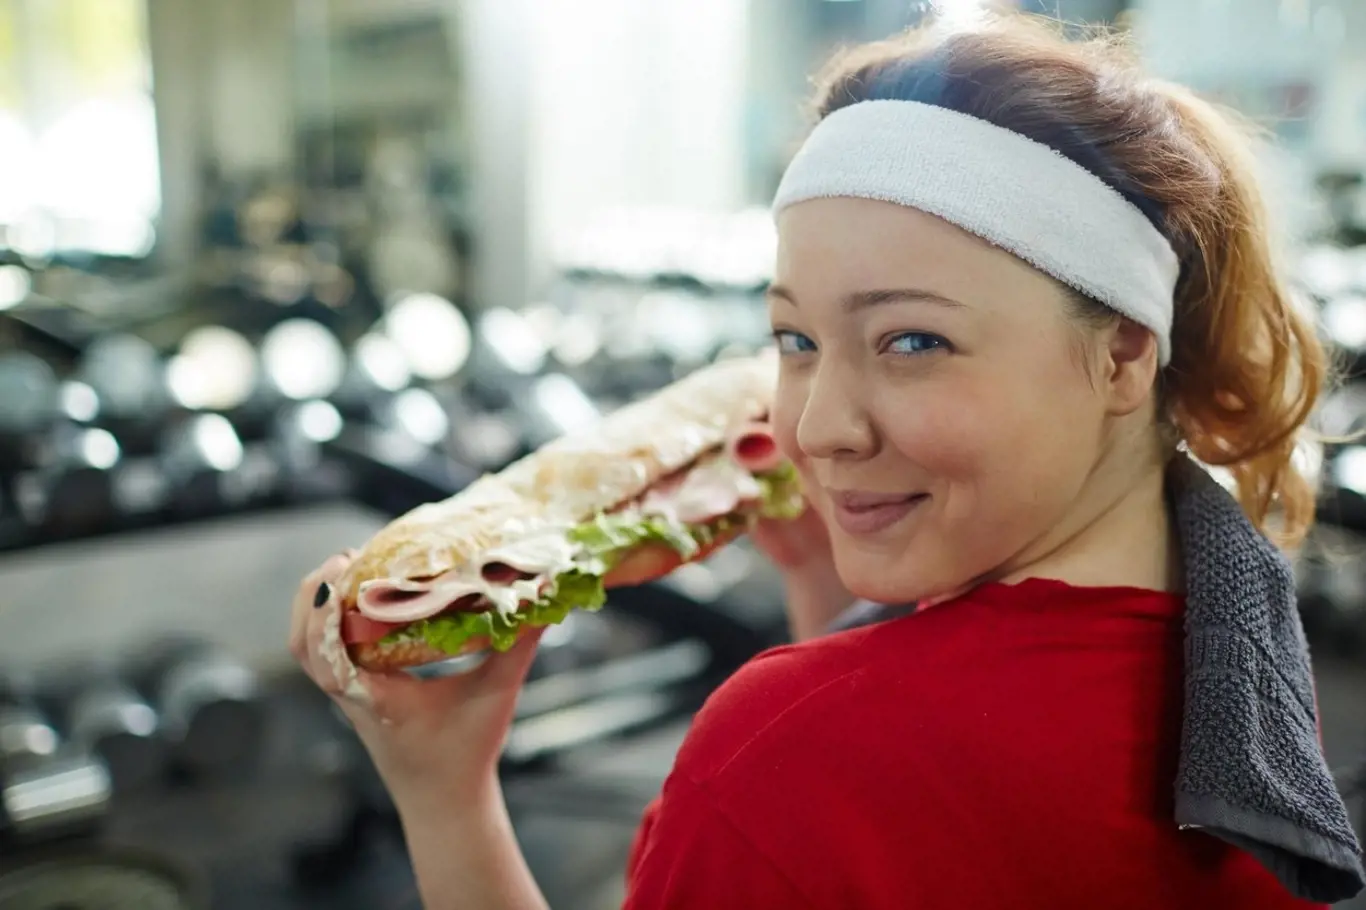 Cvičit v posilovně a přemýšlet o fast foodu kýžený efekt nepřinese